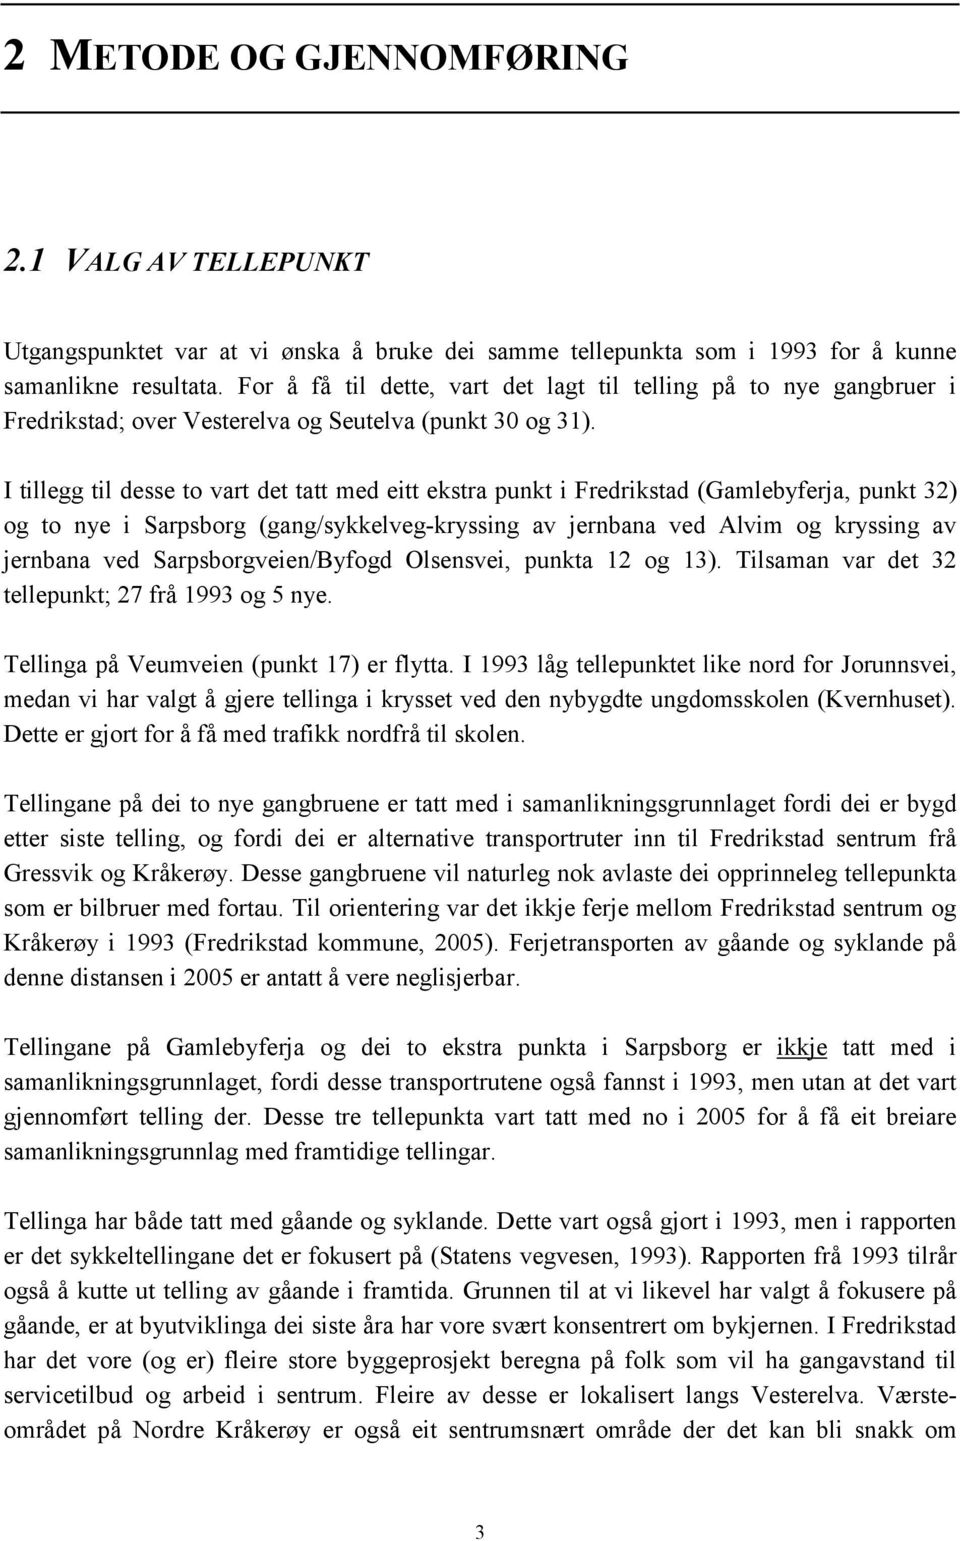 I tillegg til desse to vart det tatt med eitt ekstra punkt i Fredrikstad (Gamlebyferja, punkt 32) og to nye i Sarpsborg (gang/sykkelveg-kryssing av jernbana ved Alvim og kryssing av jernbana ved